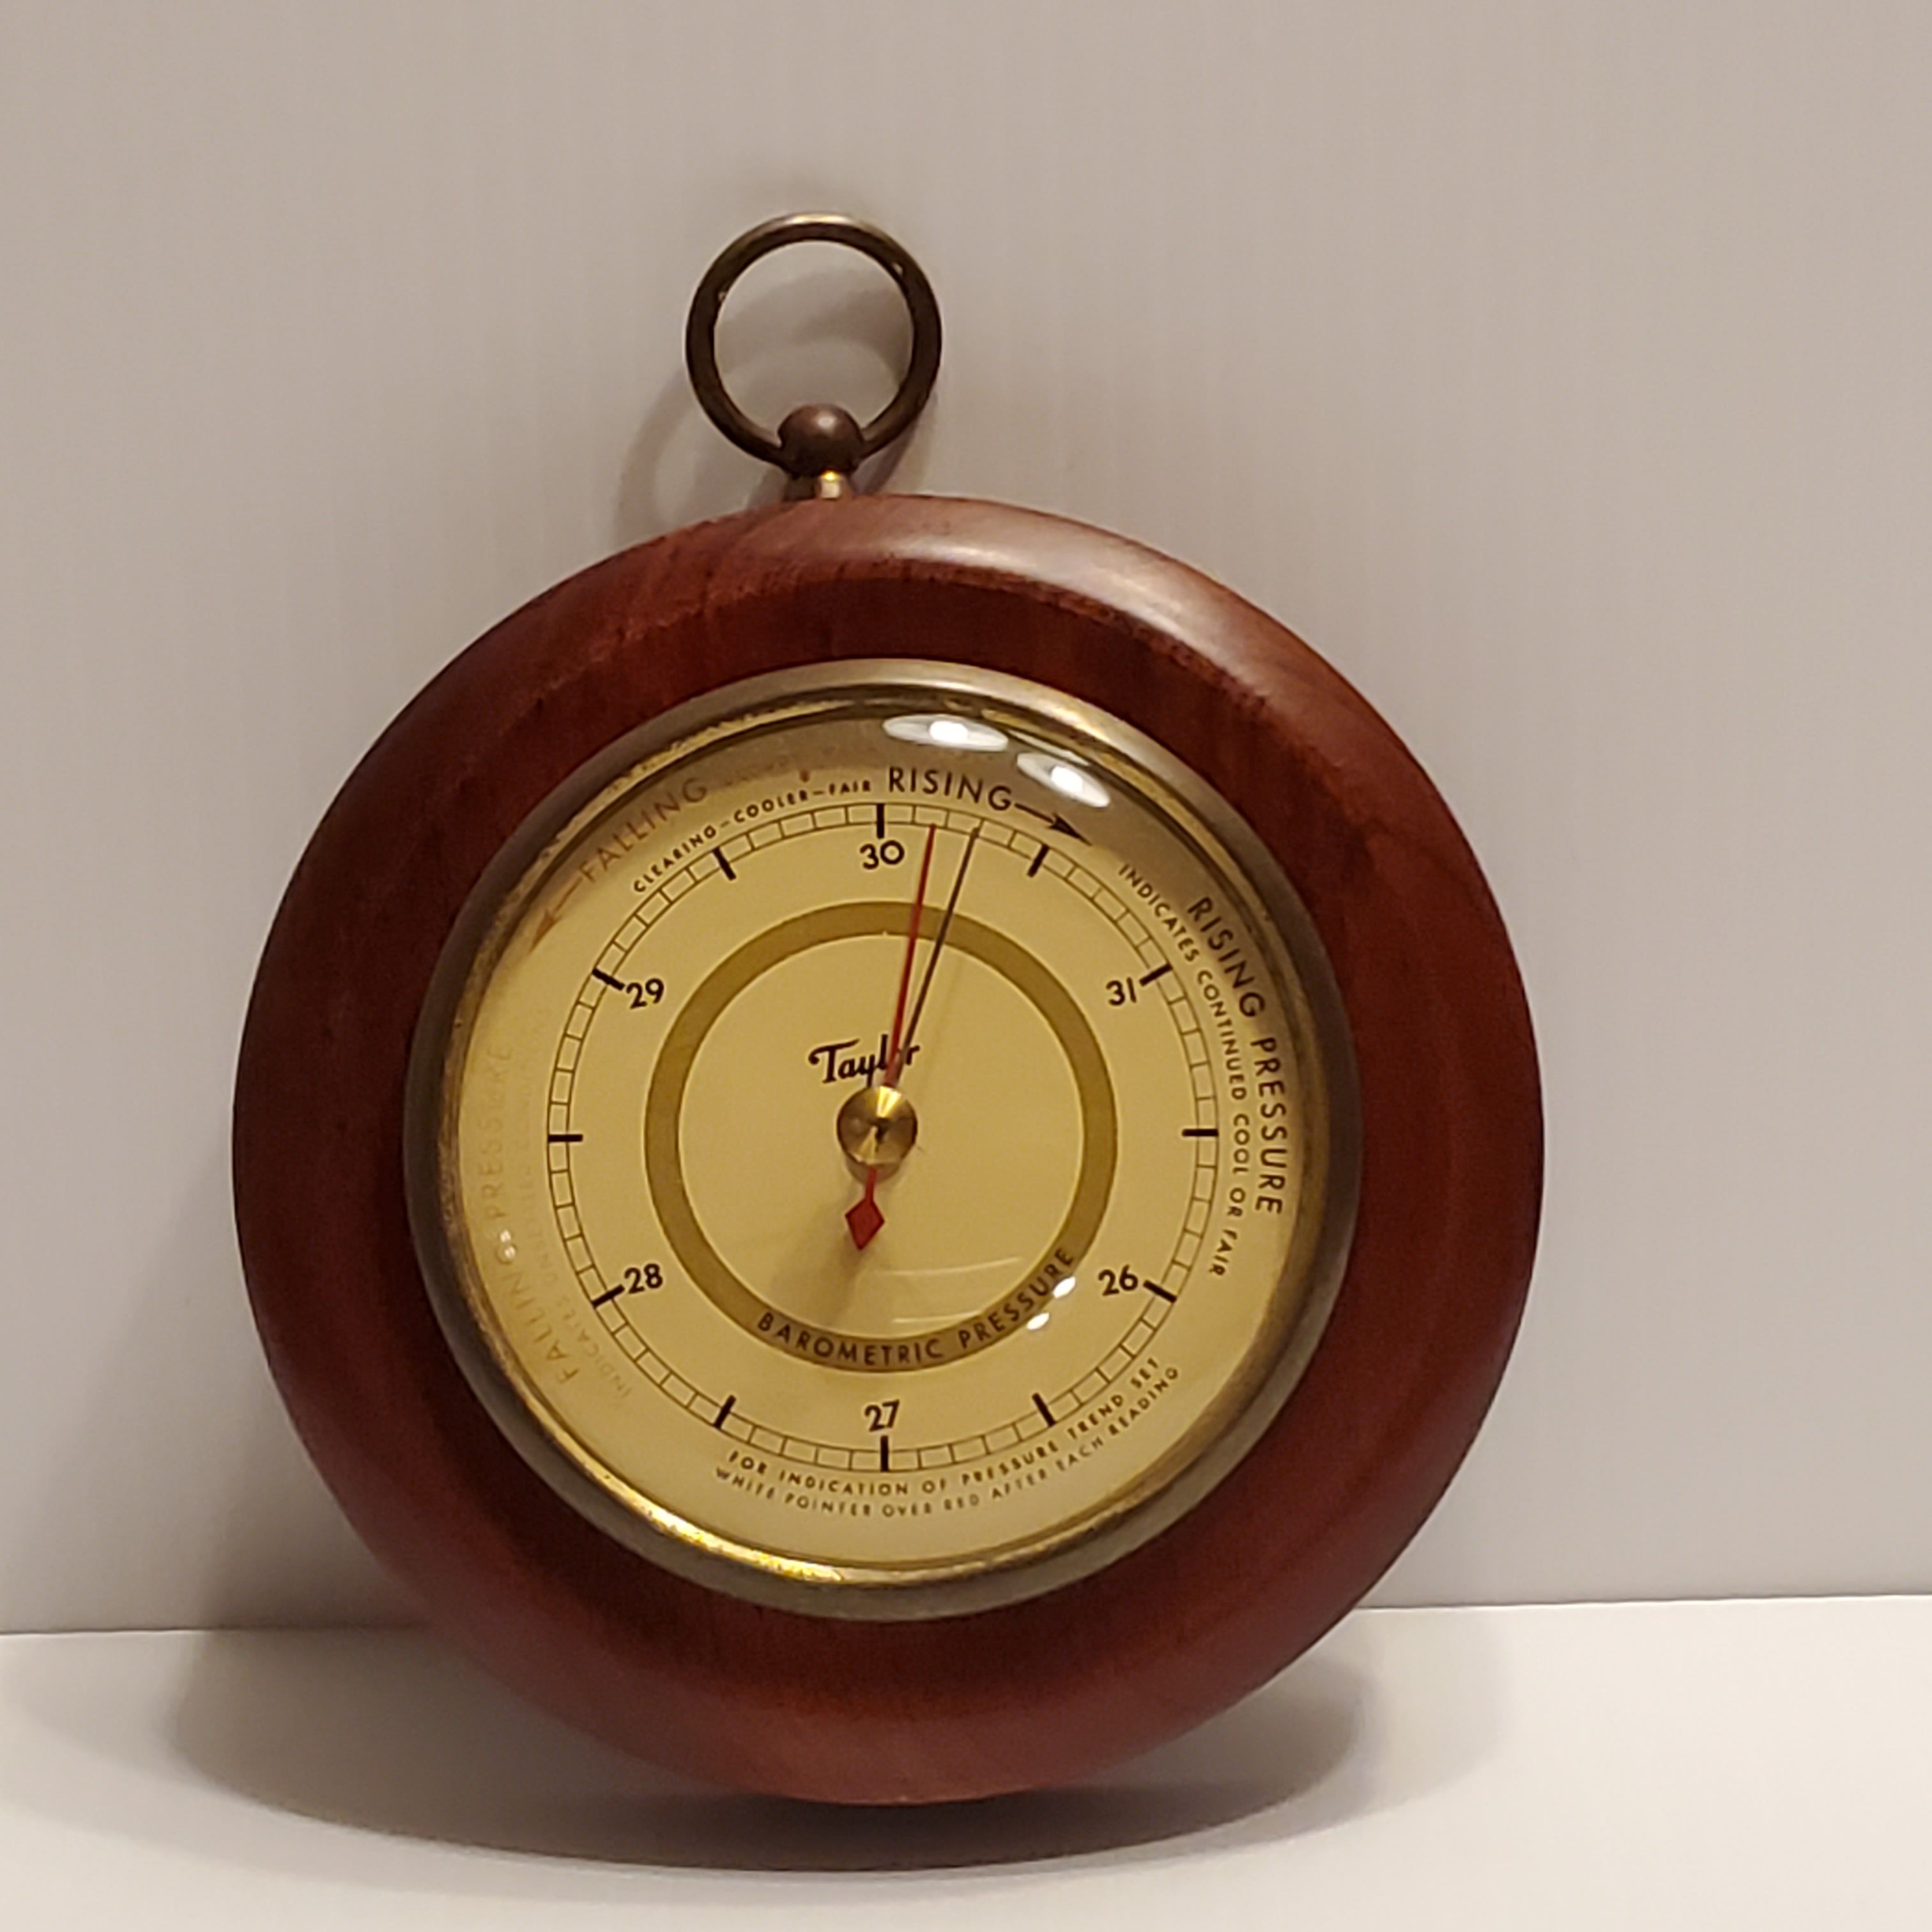 Vintage Taylor barometer with wood frame. 5 ¼” diameter.